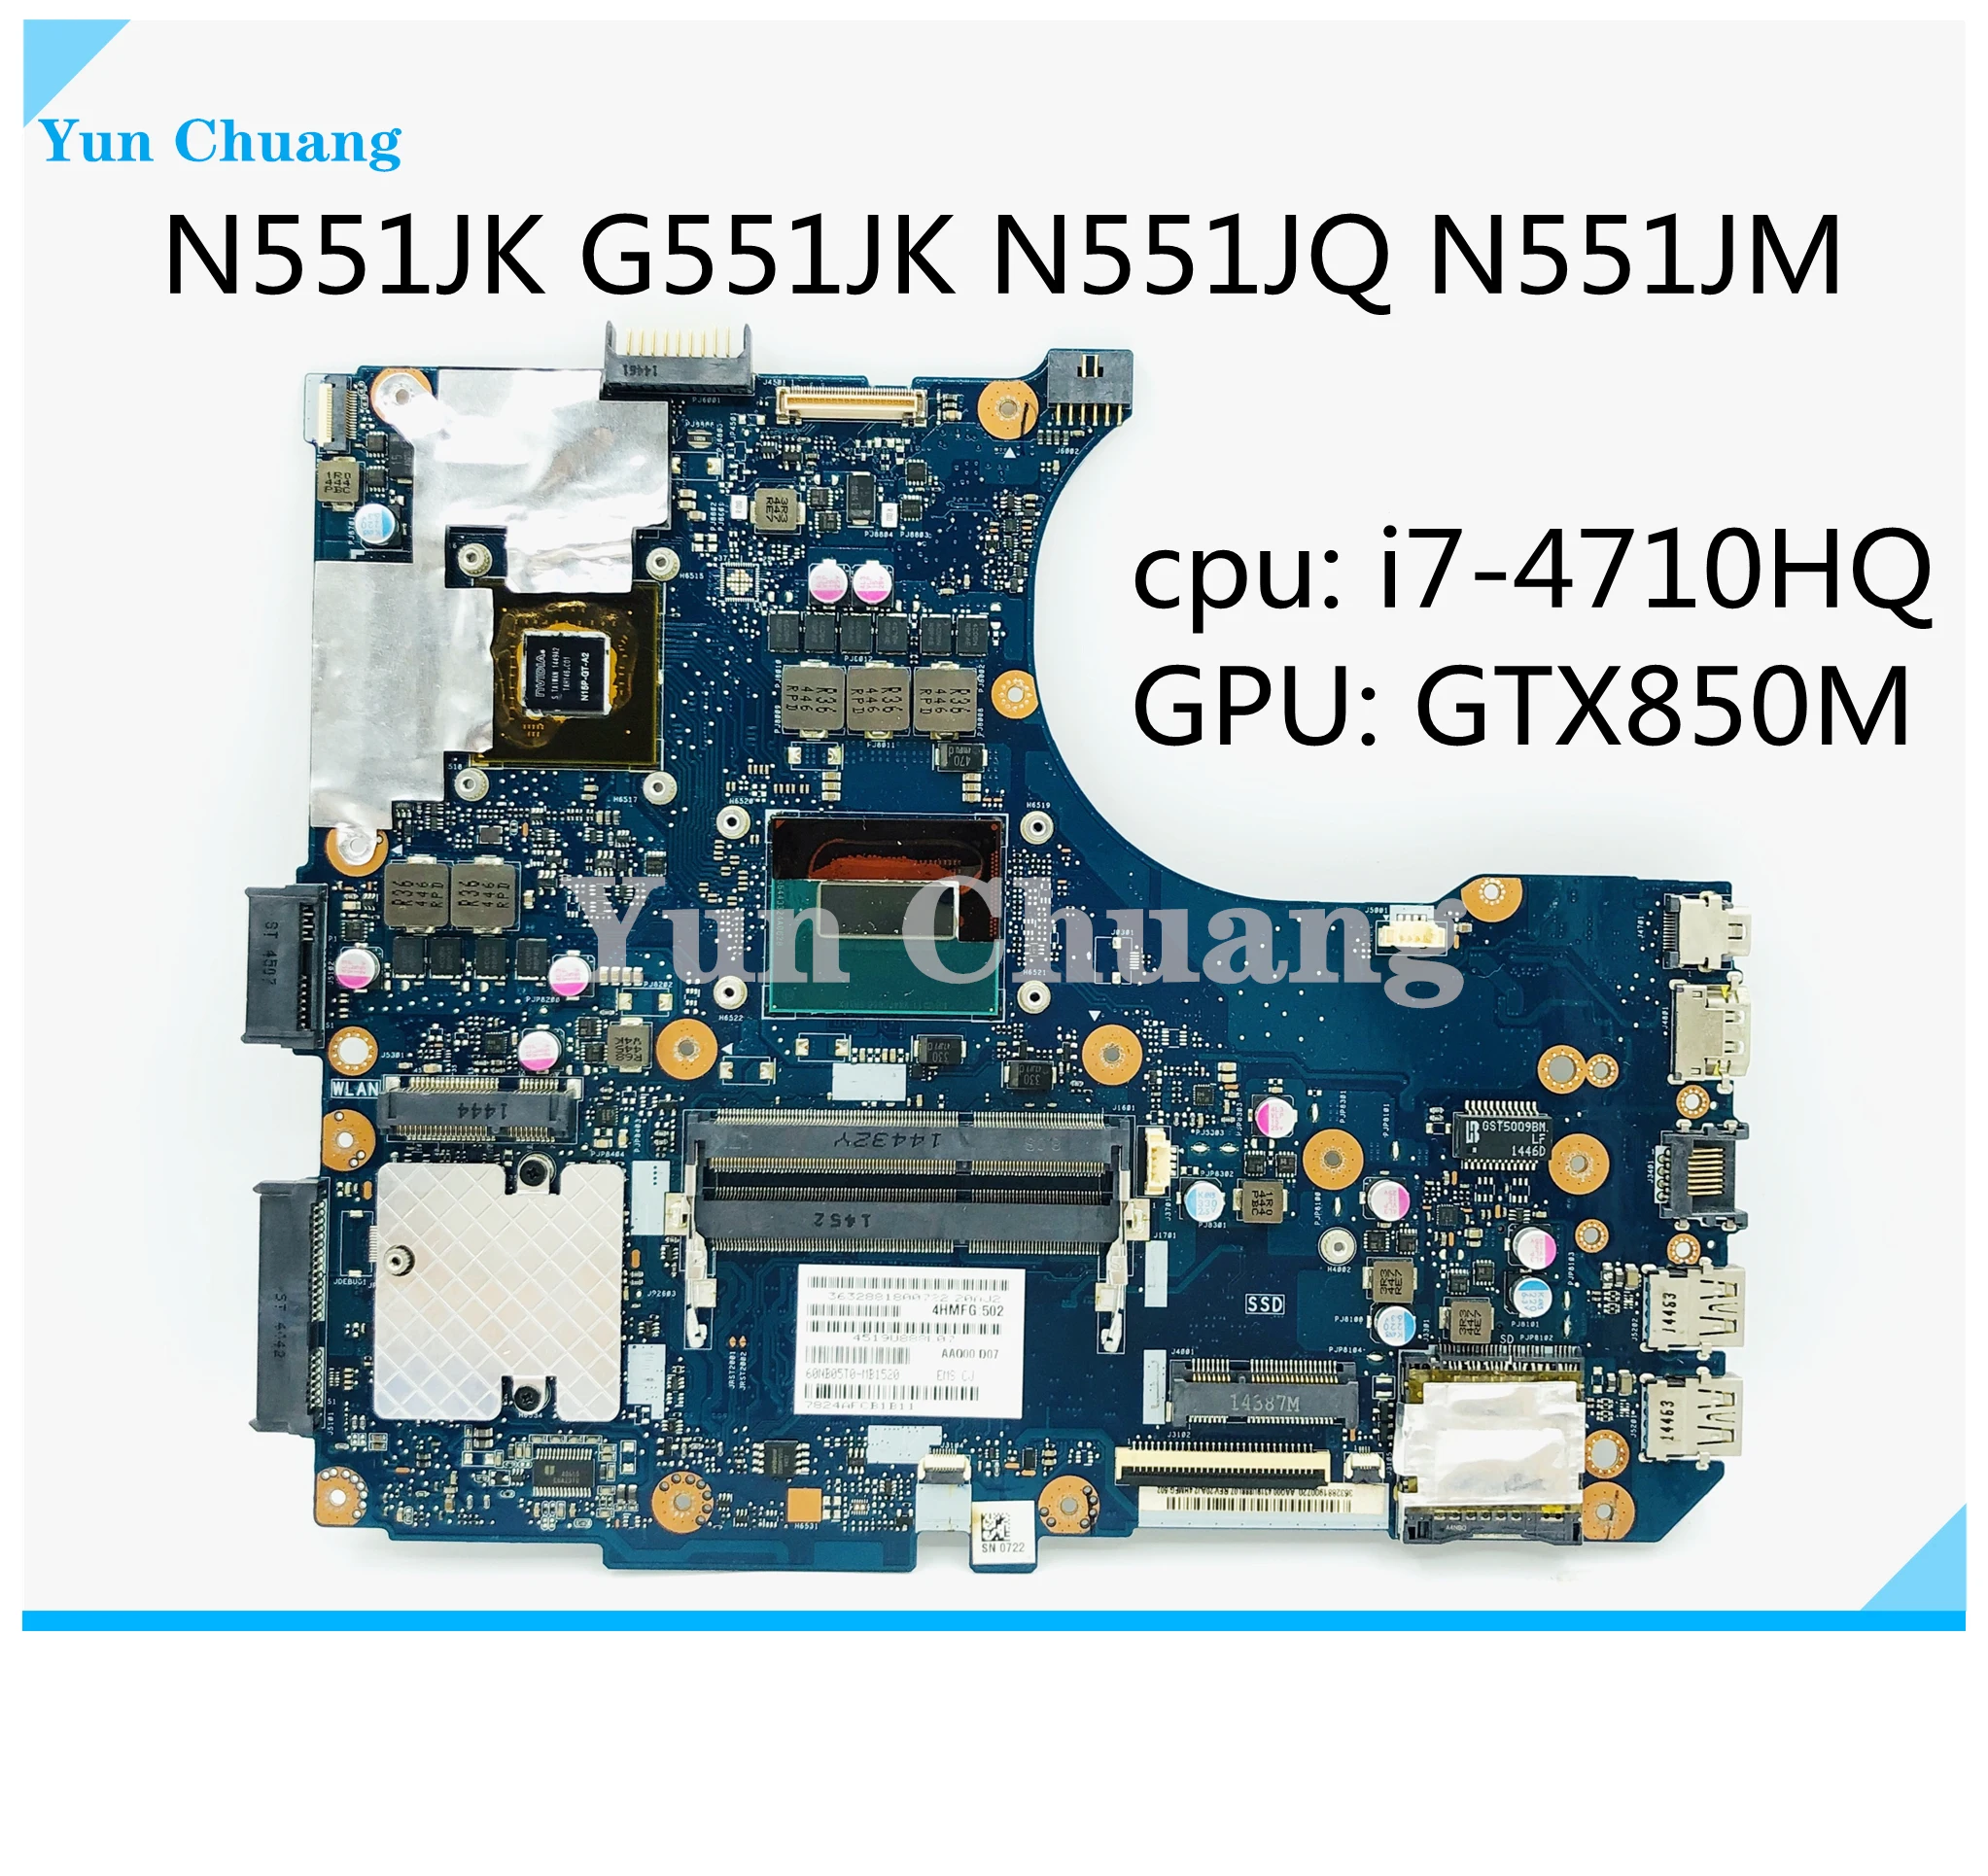 N551JK מחשב נייד לוח אם Asus N551JK G551JK N551JQ N551JM N551J המבחן המקורי mainboard עם i7-4710HQ CPU GTX850M GPU DDR3